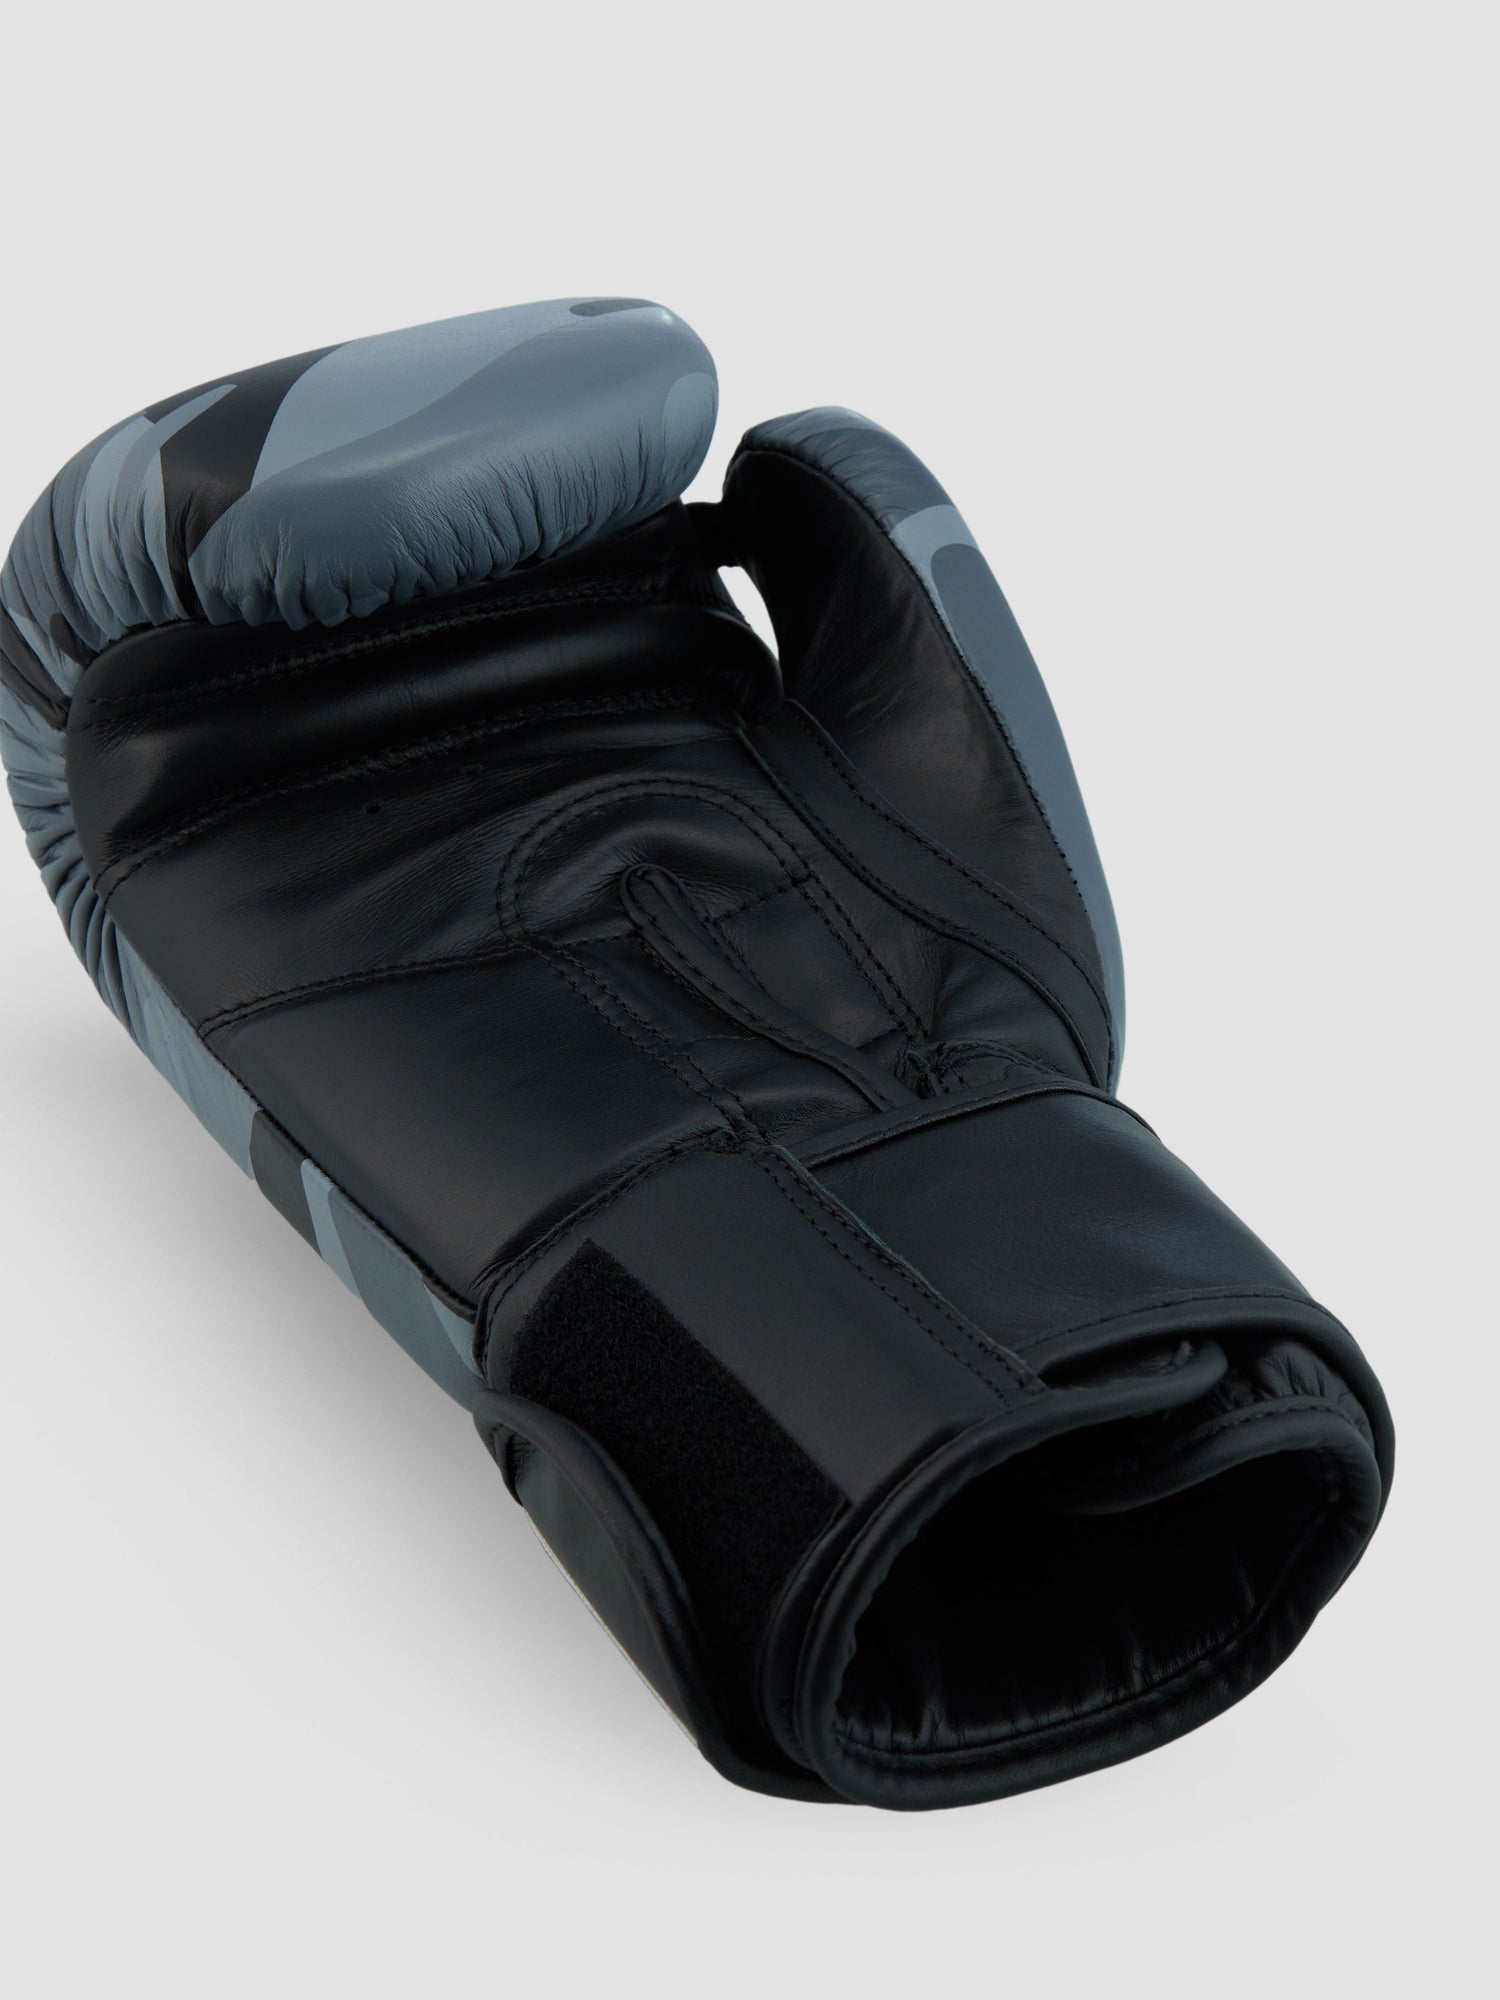 Training/Boxing Gloves Covert